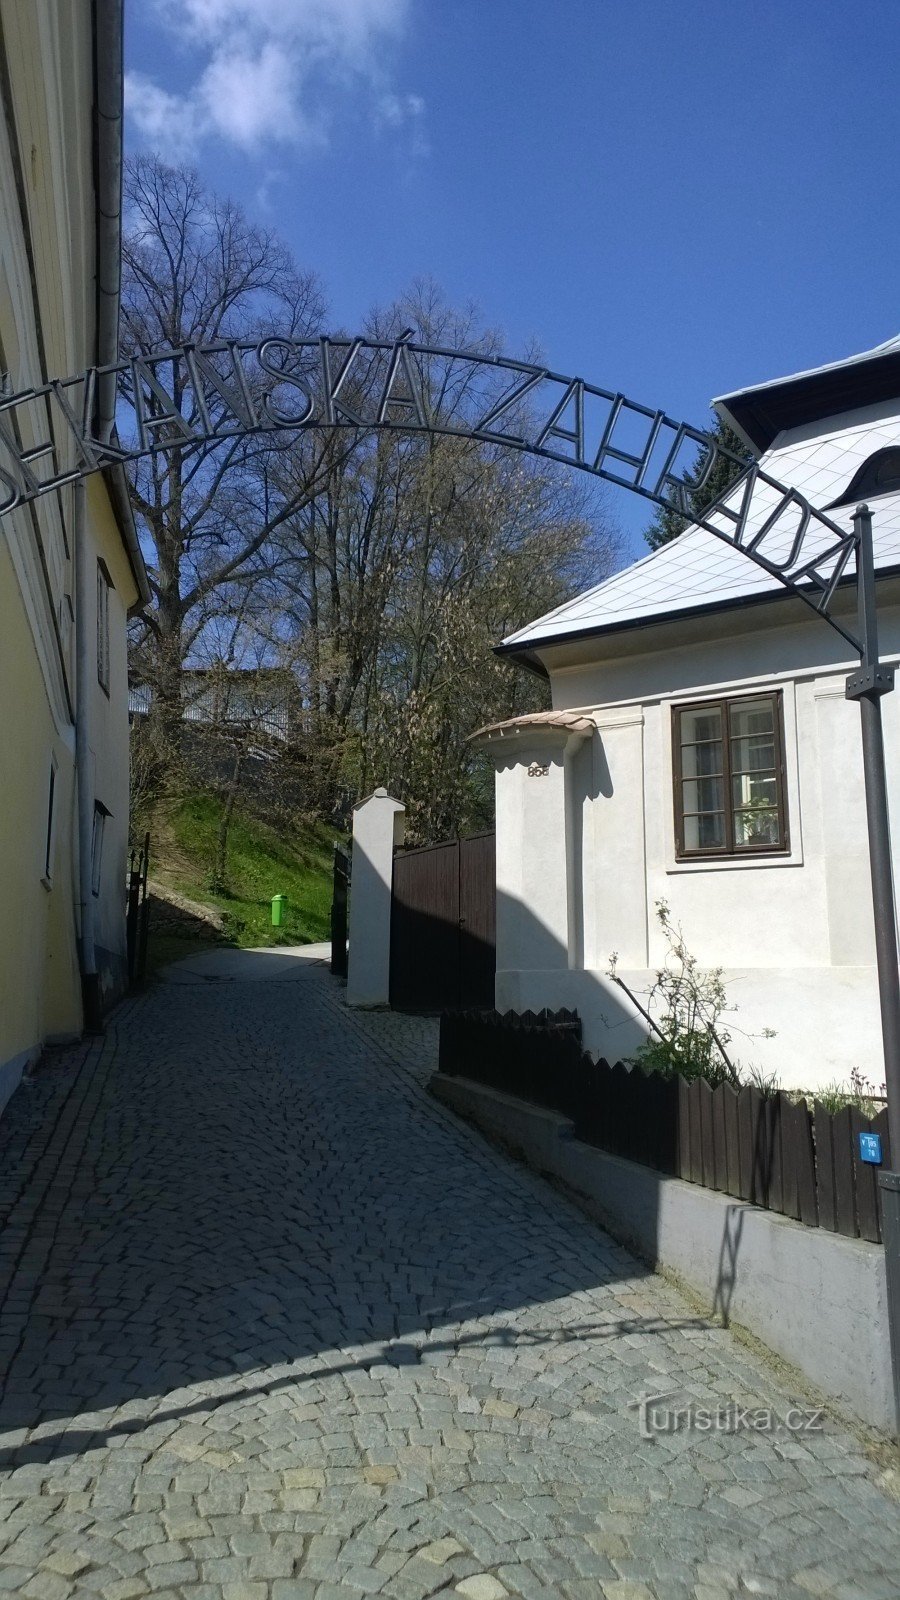 Khu vườn của trưởng khoa ở Pelhřimov.